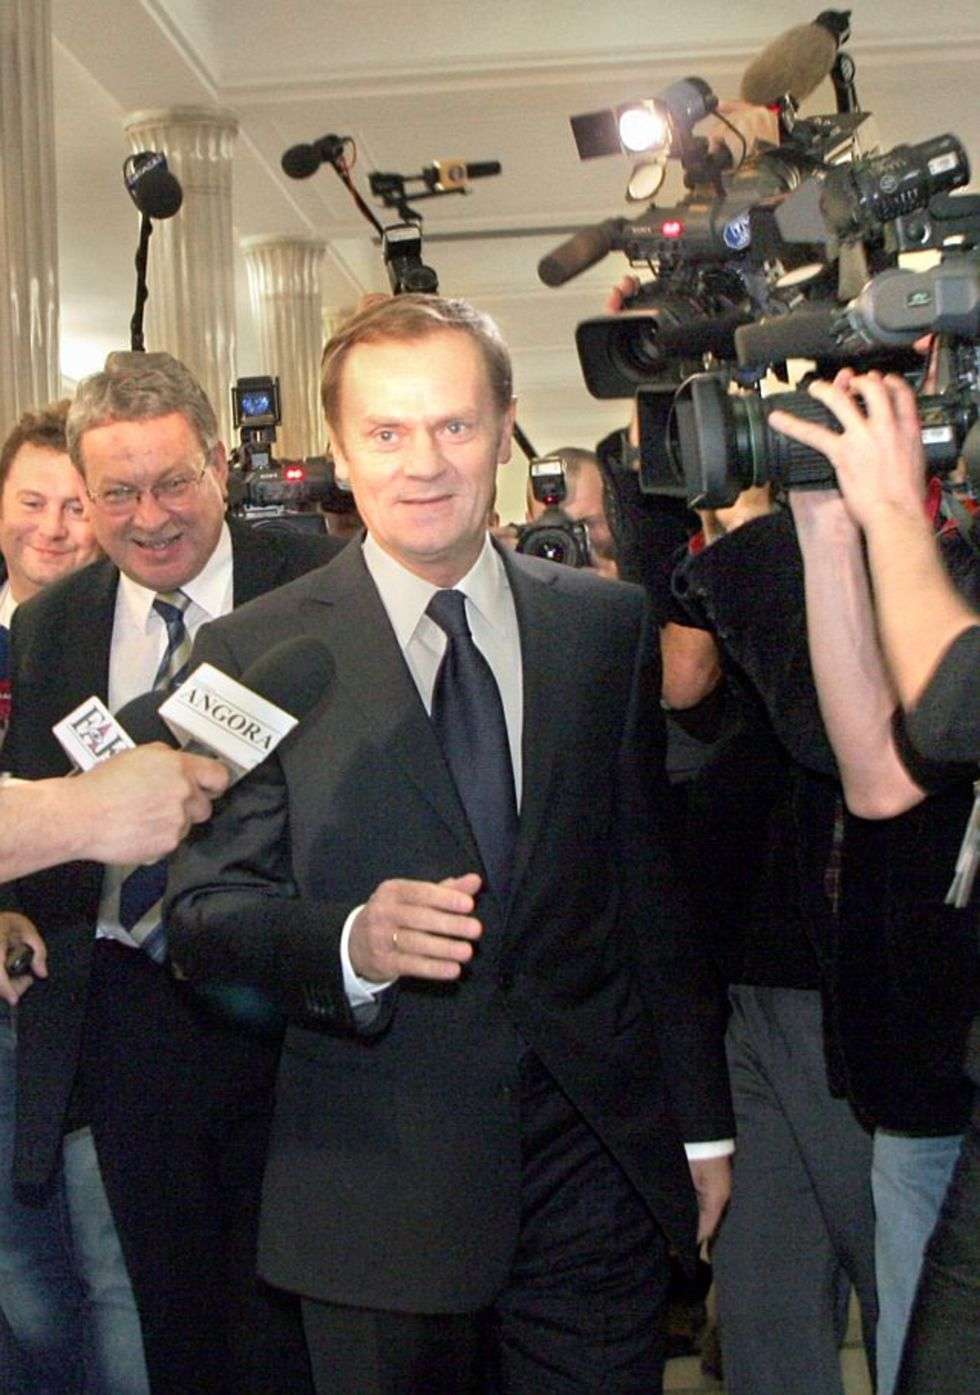  Prawie premier Donald Tusk przybyl do Sejmu